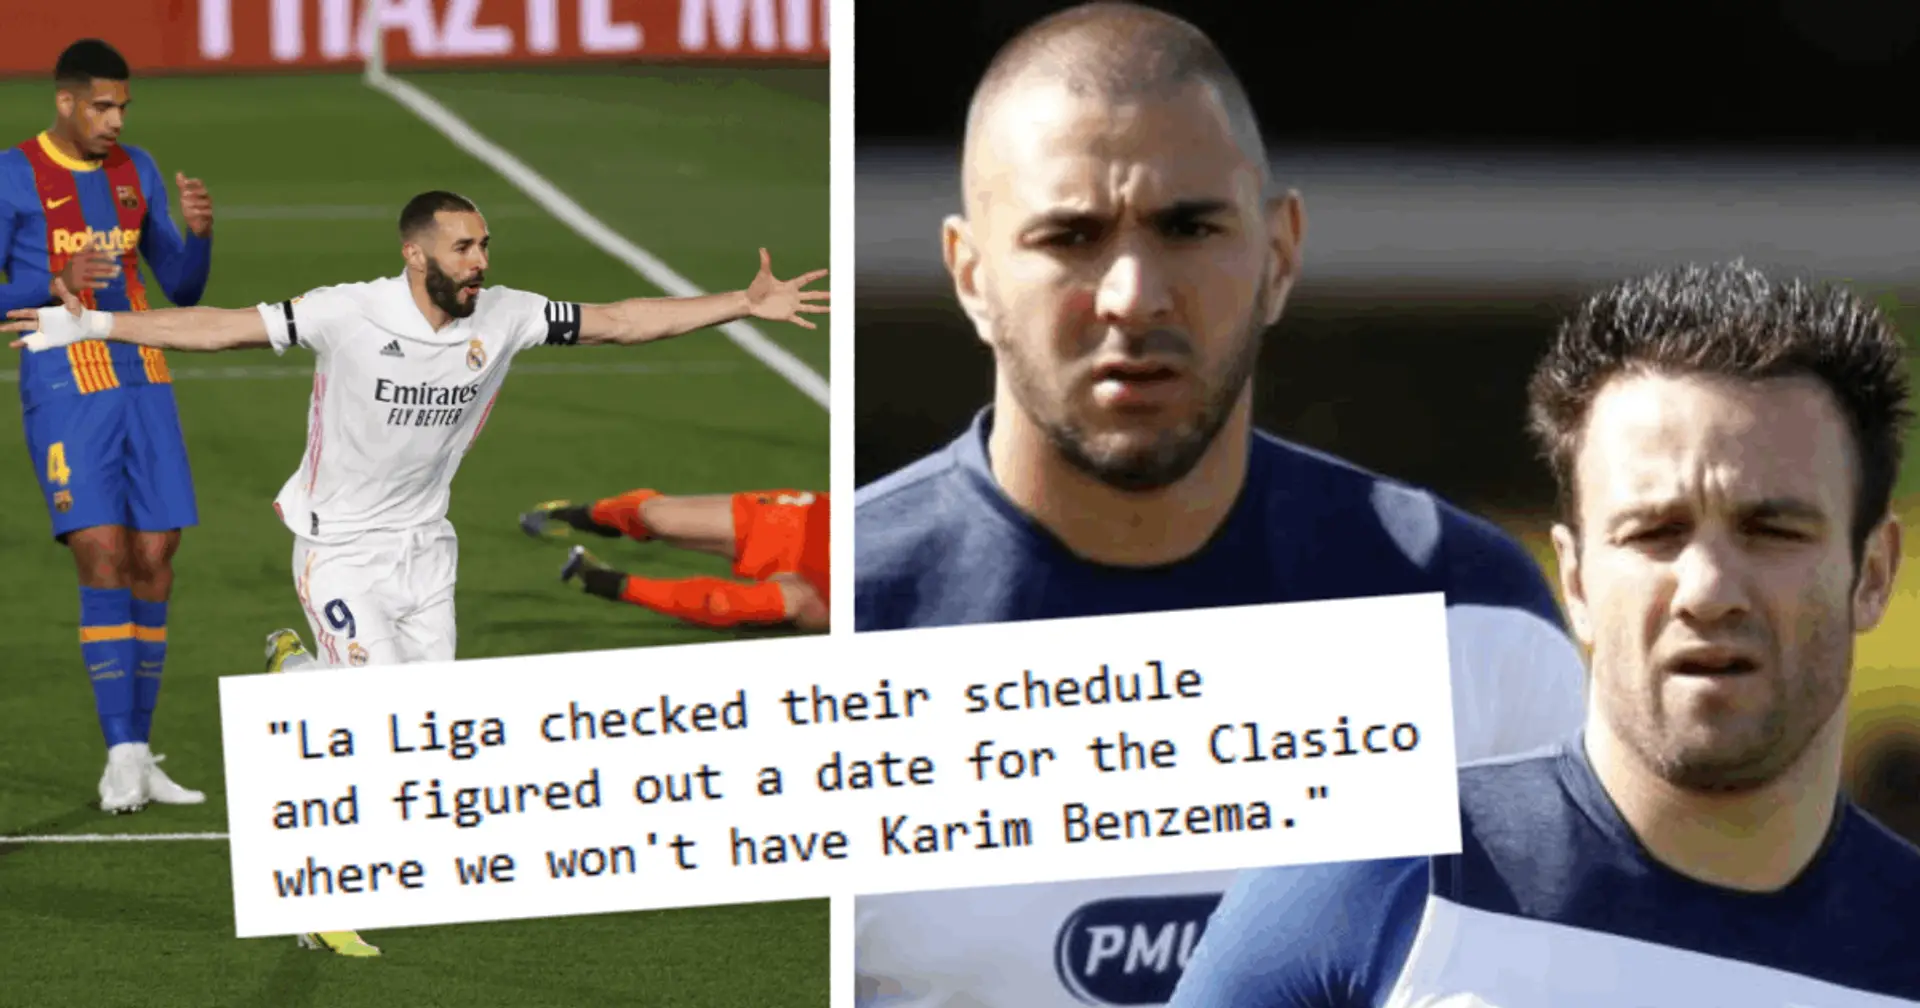 Karim Benzema manquera-t-il vraiment le Clasico en raison de son procès? Vous avez demandé, nous avons répondu